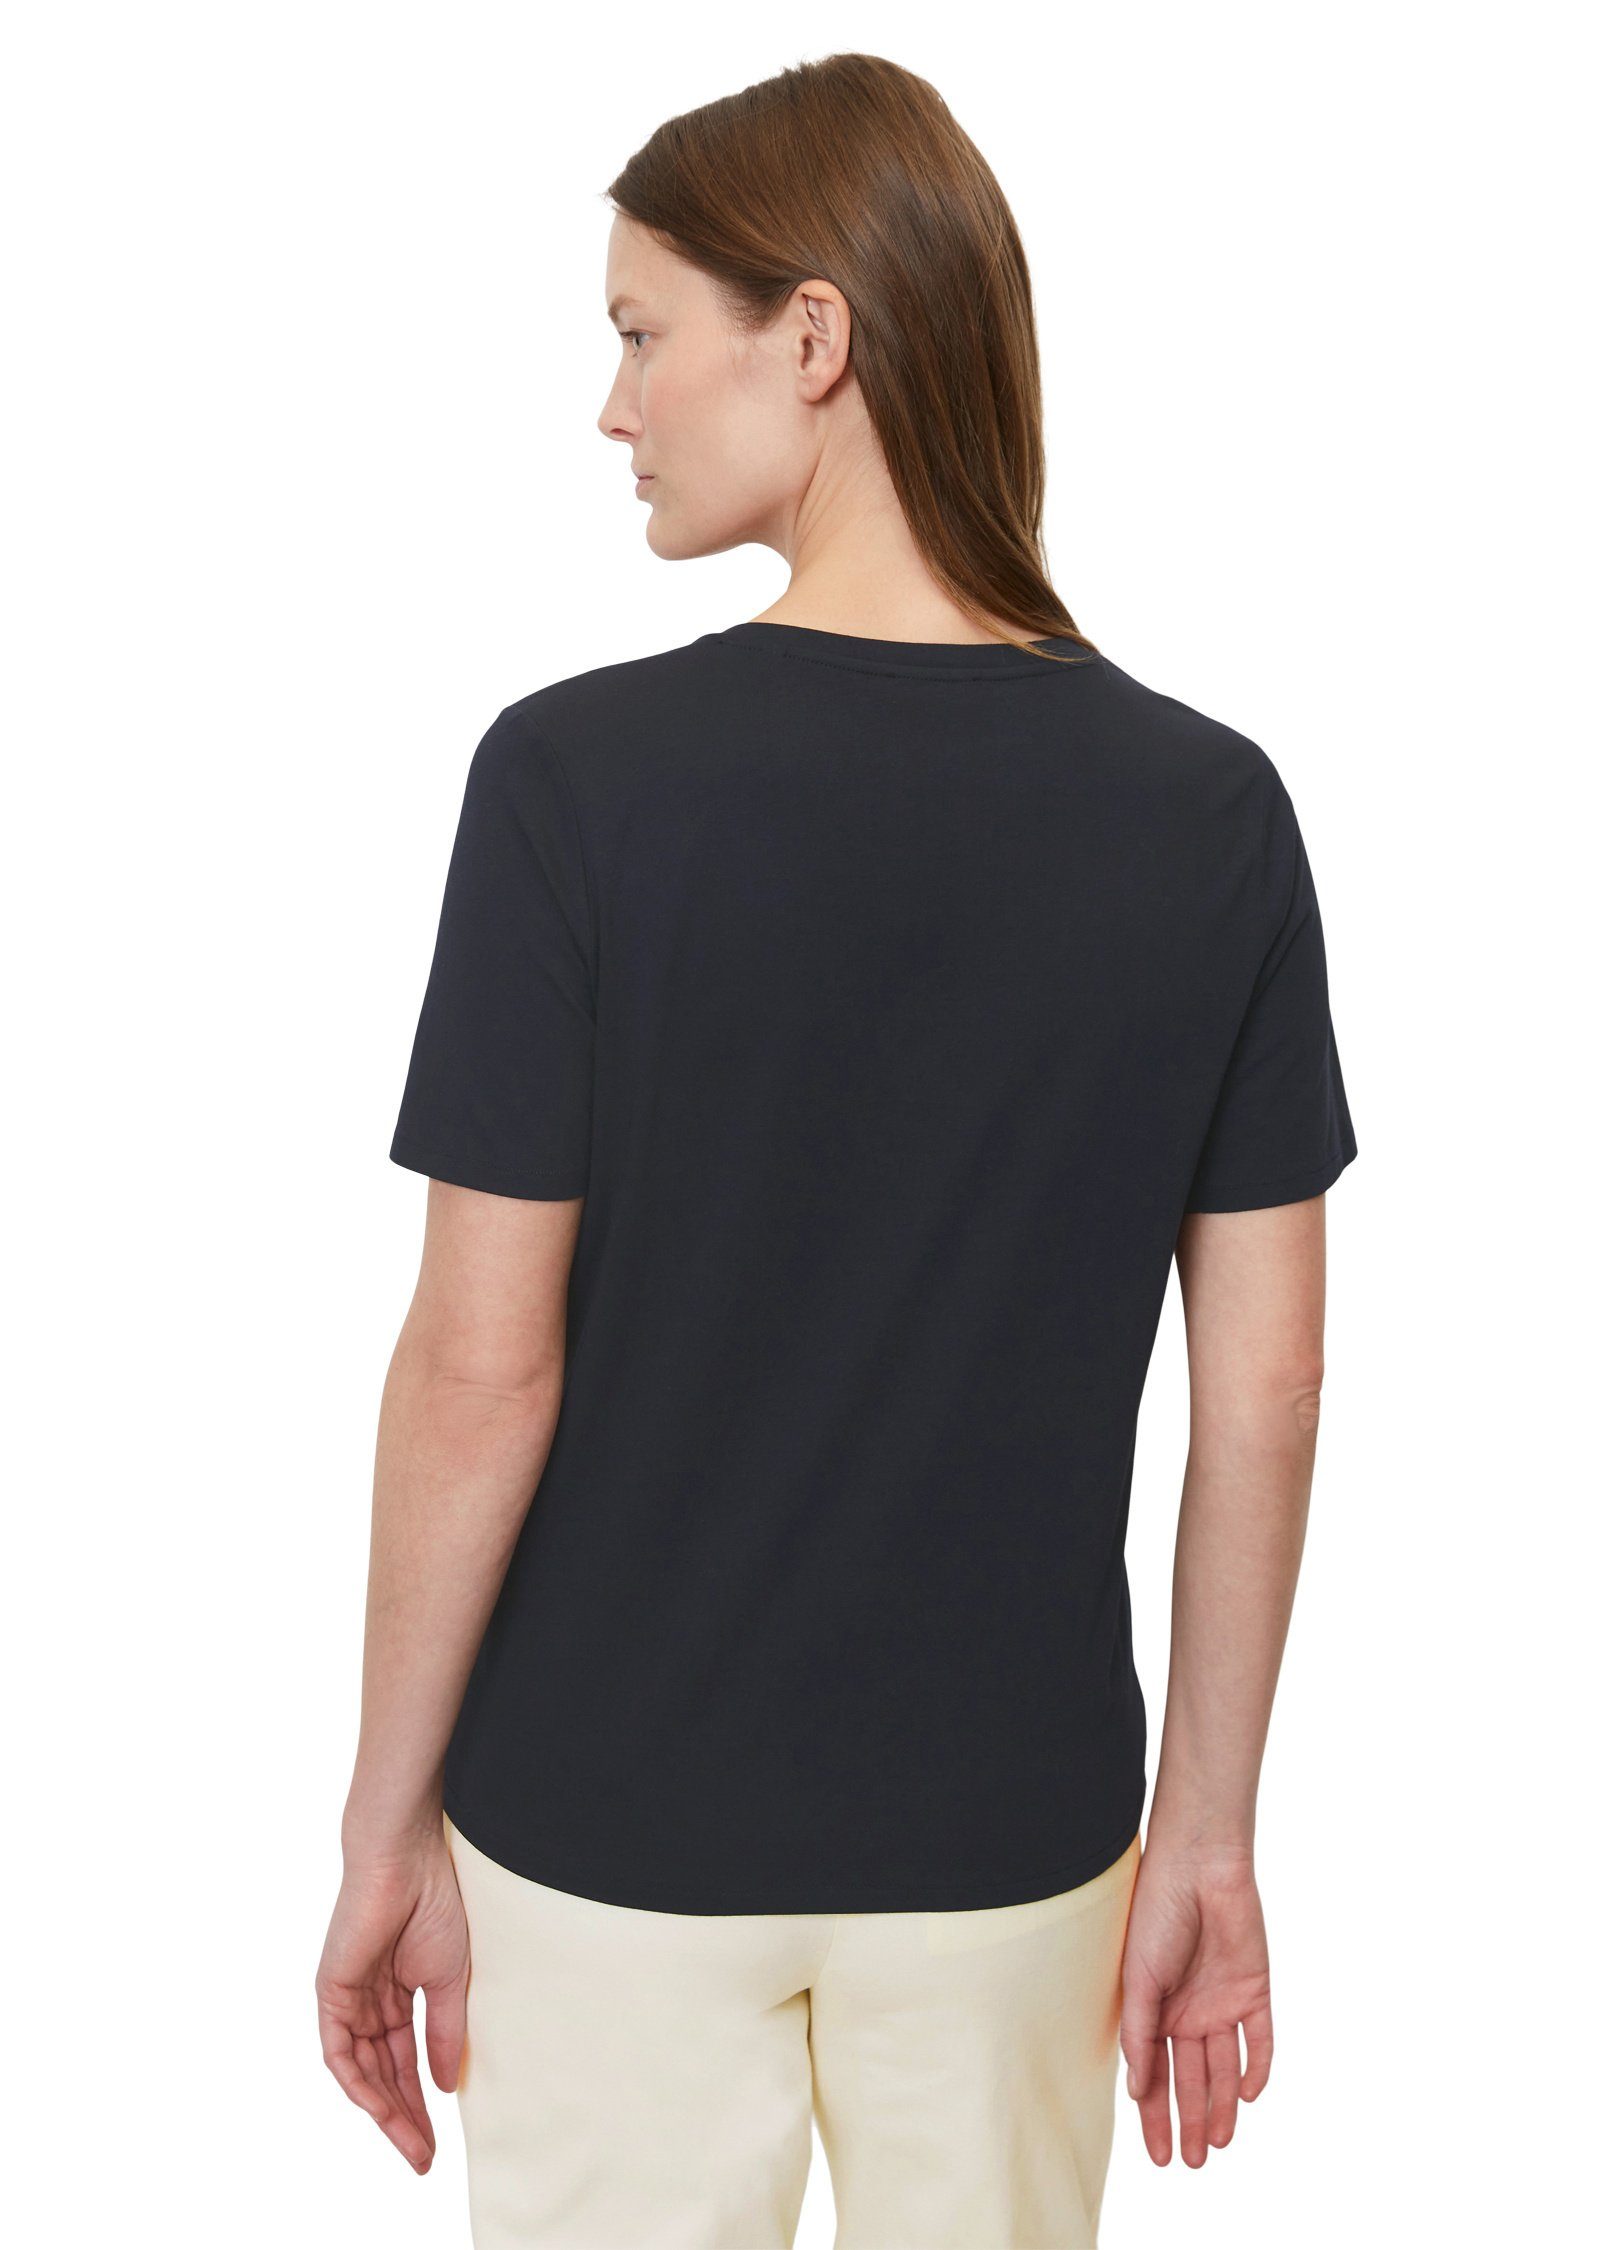 Cotton blau aus Marc O'Polo Organic T-Shirt